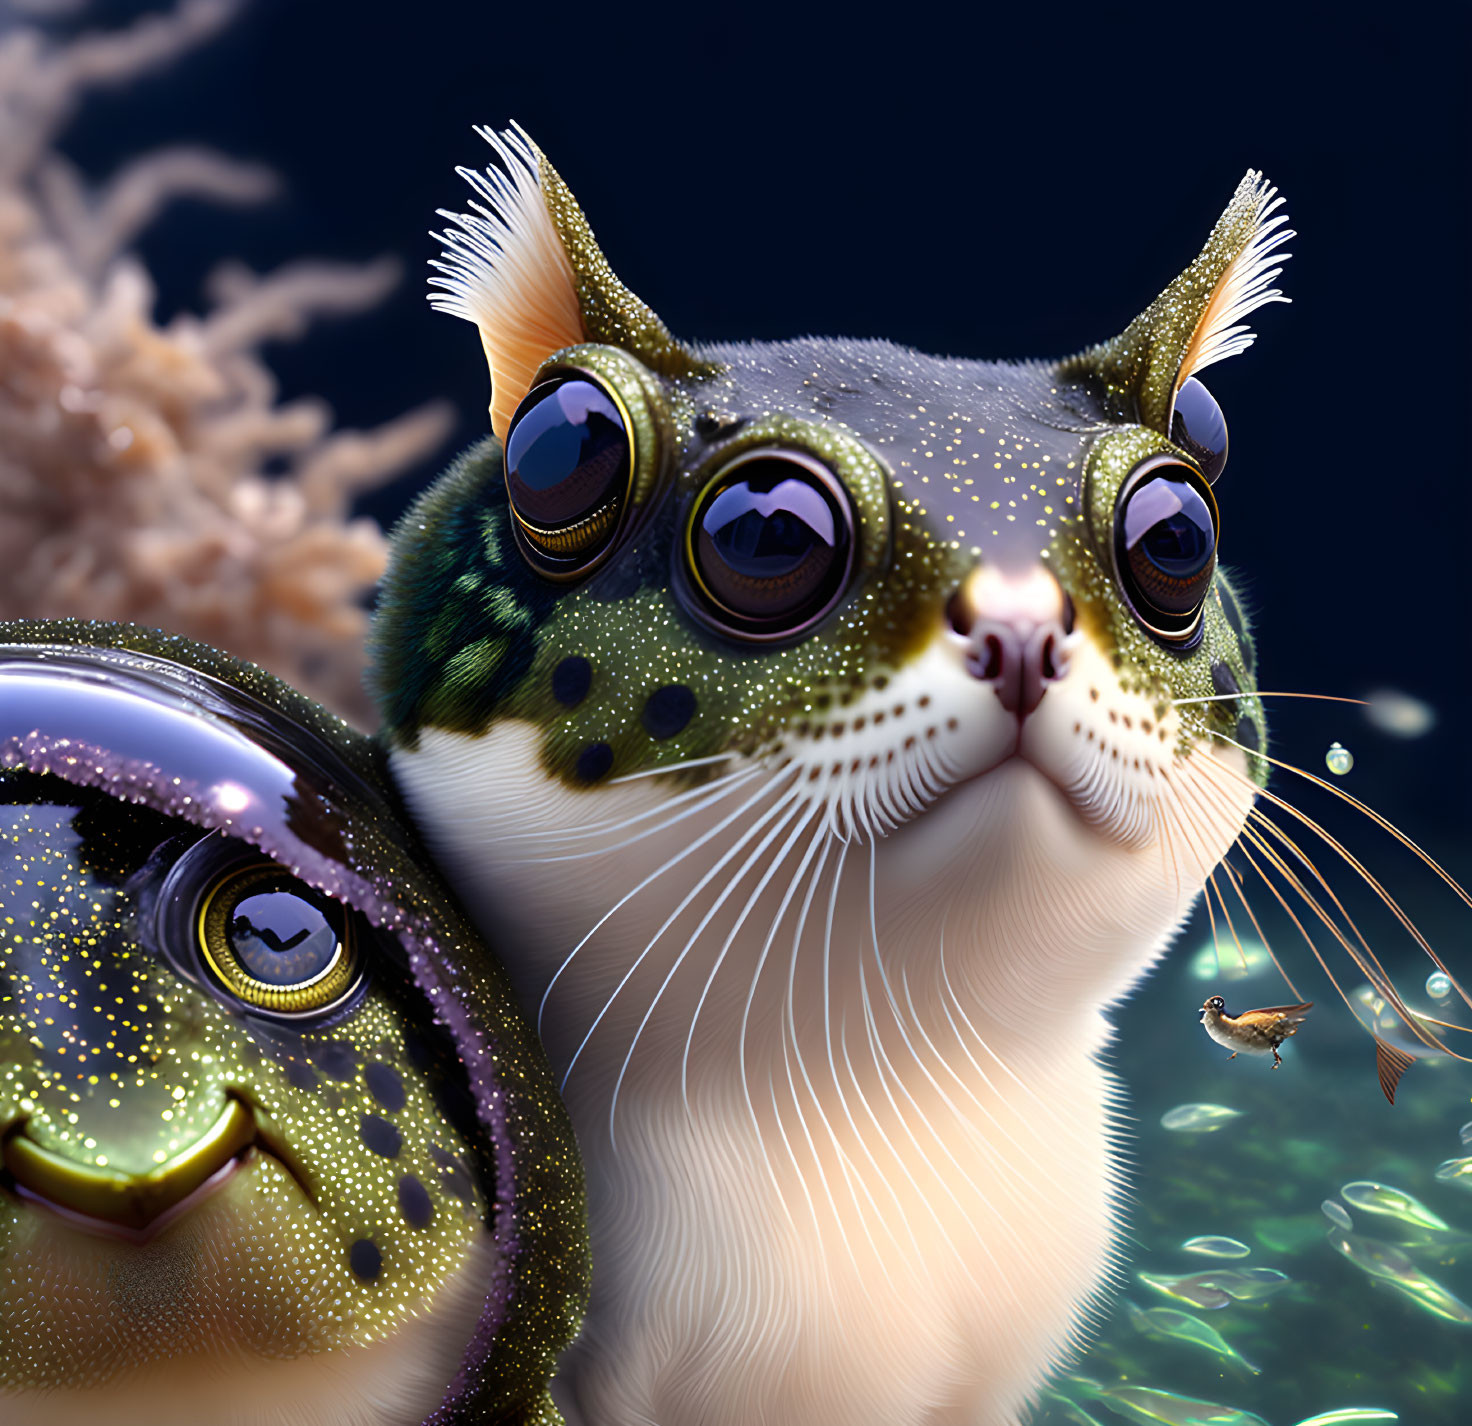 Fantastical Cat-Fish Hybrid Creature Illustration Underwater